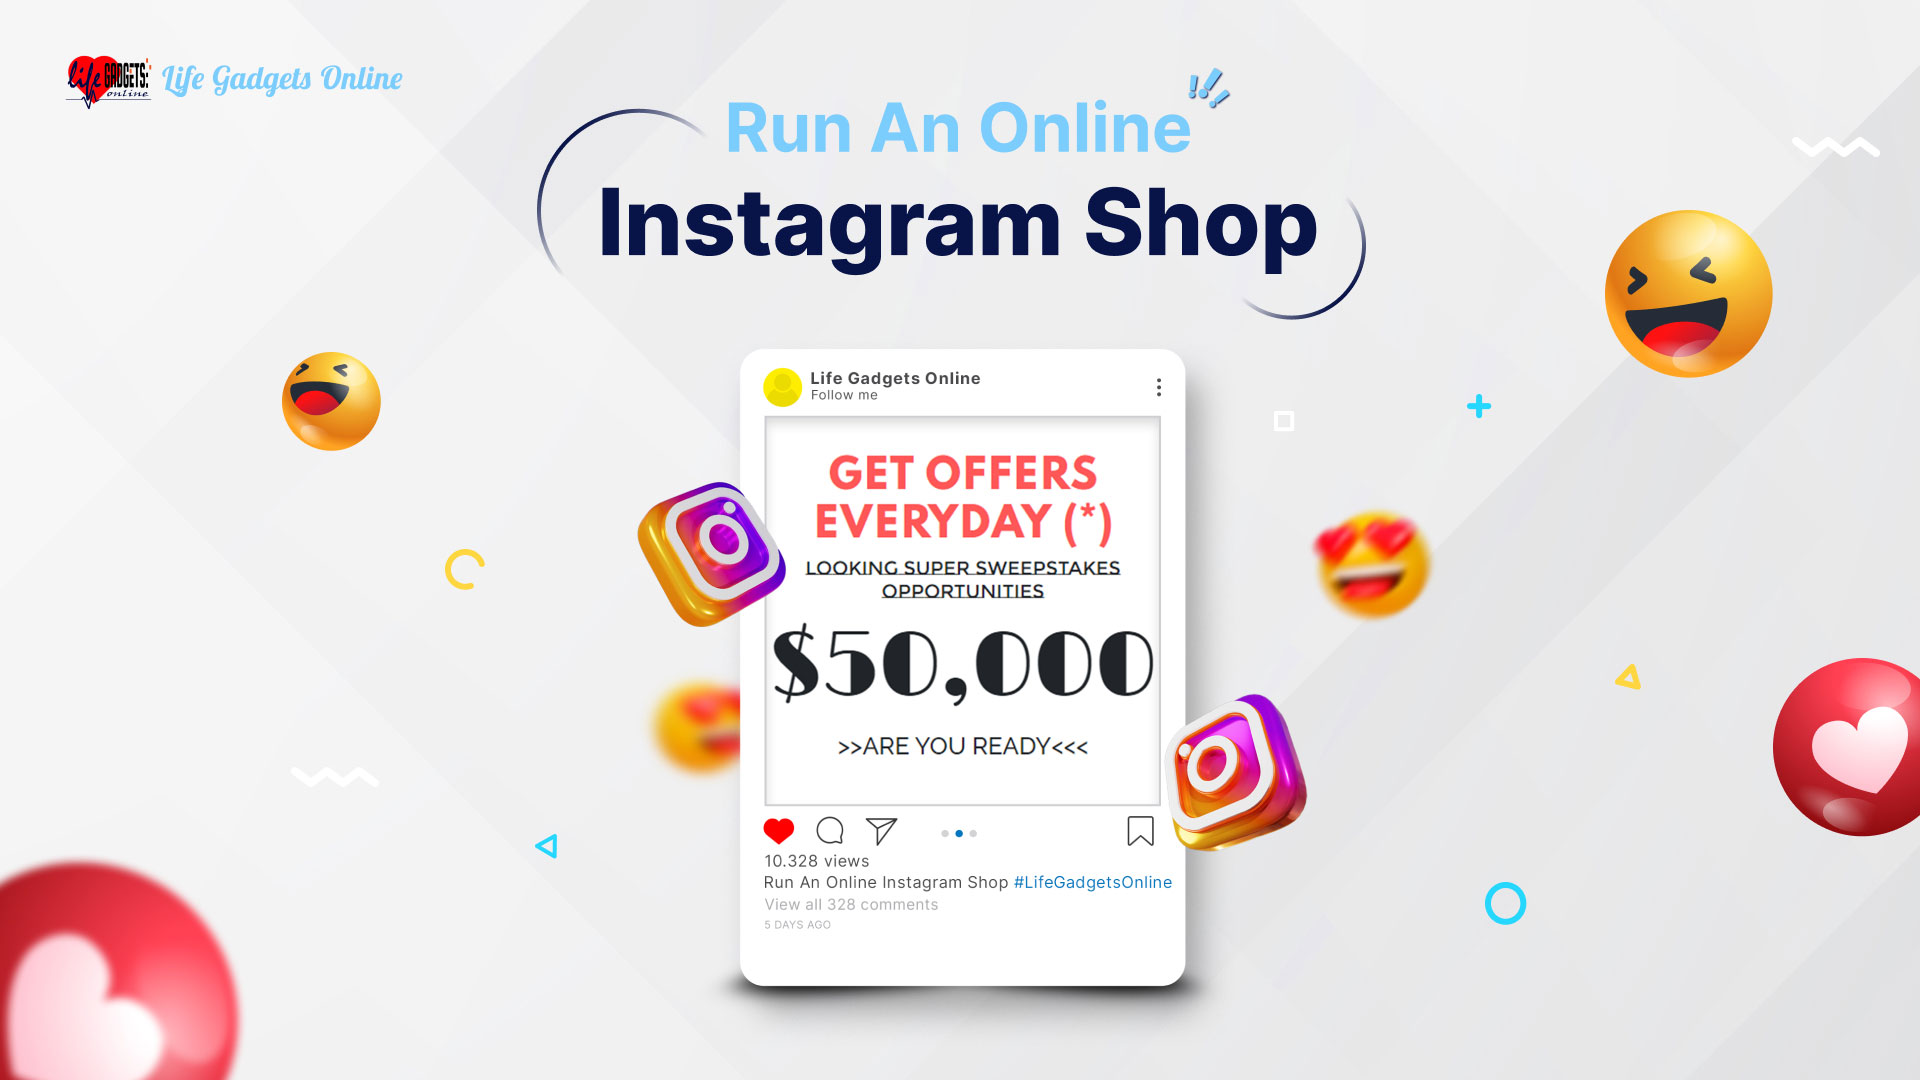 Run An Online Instagram Shop